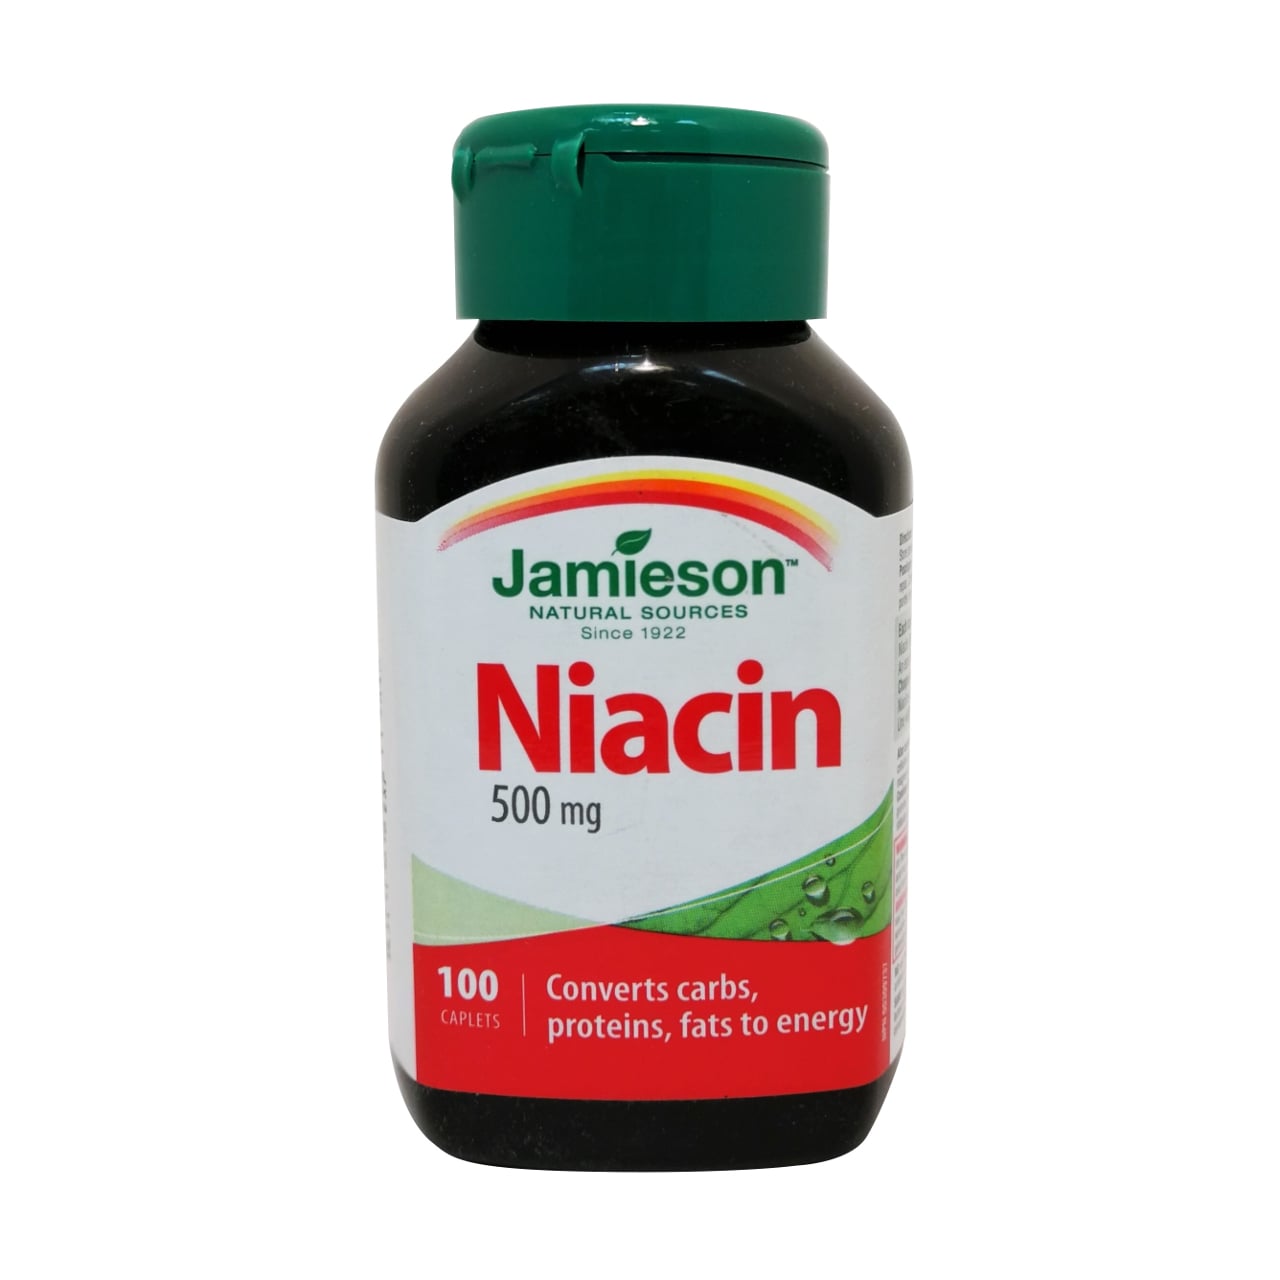 Product label for Jamieson Niacin 500mg in English